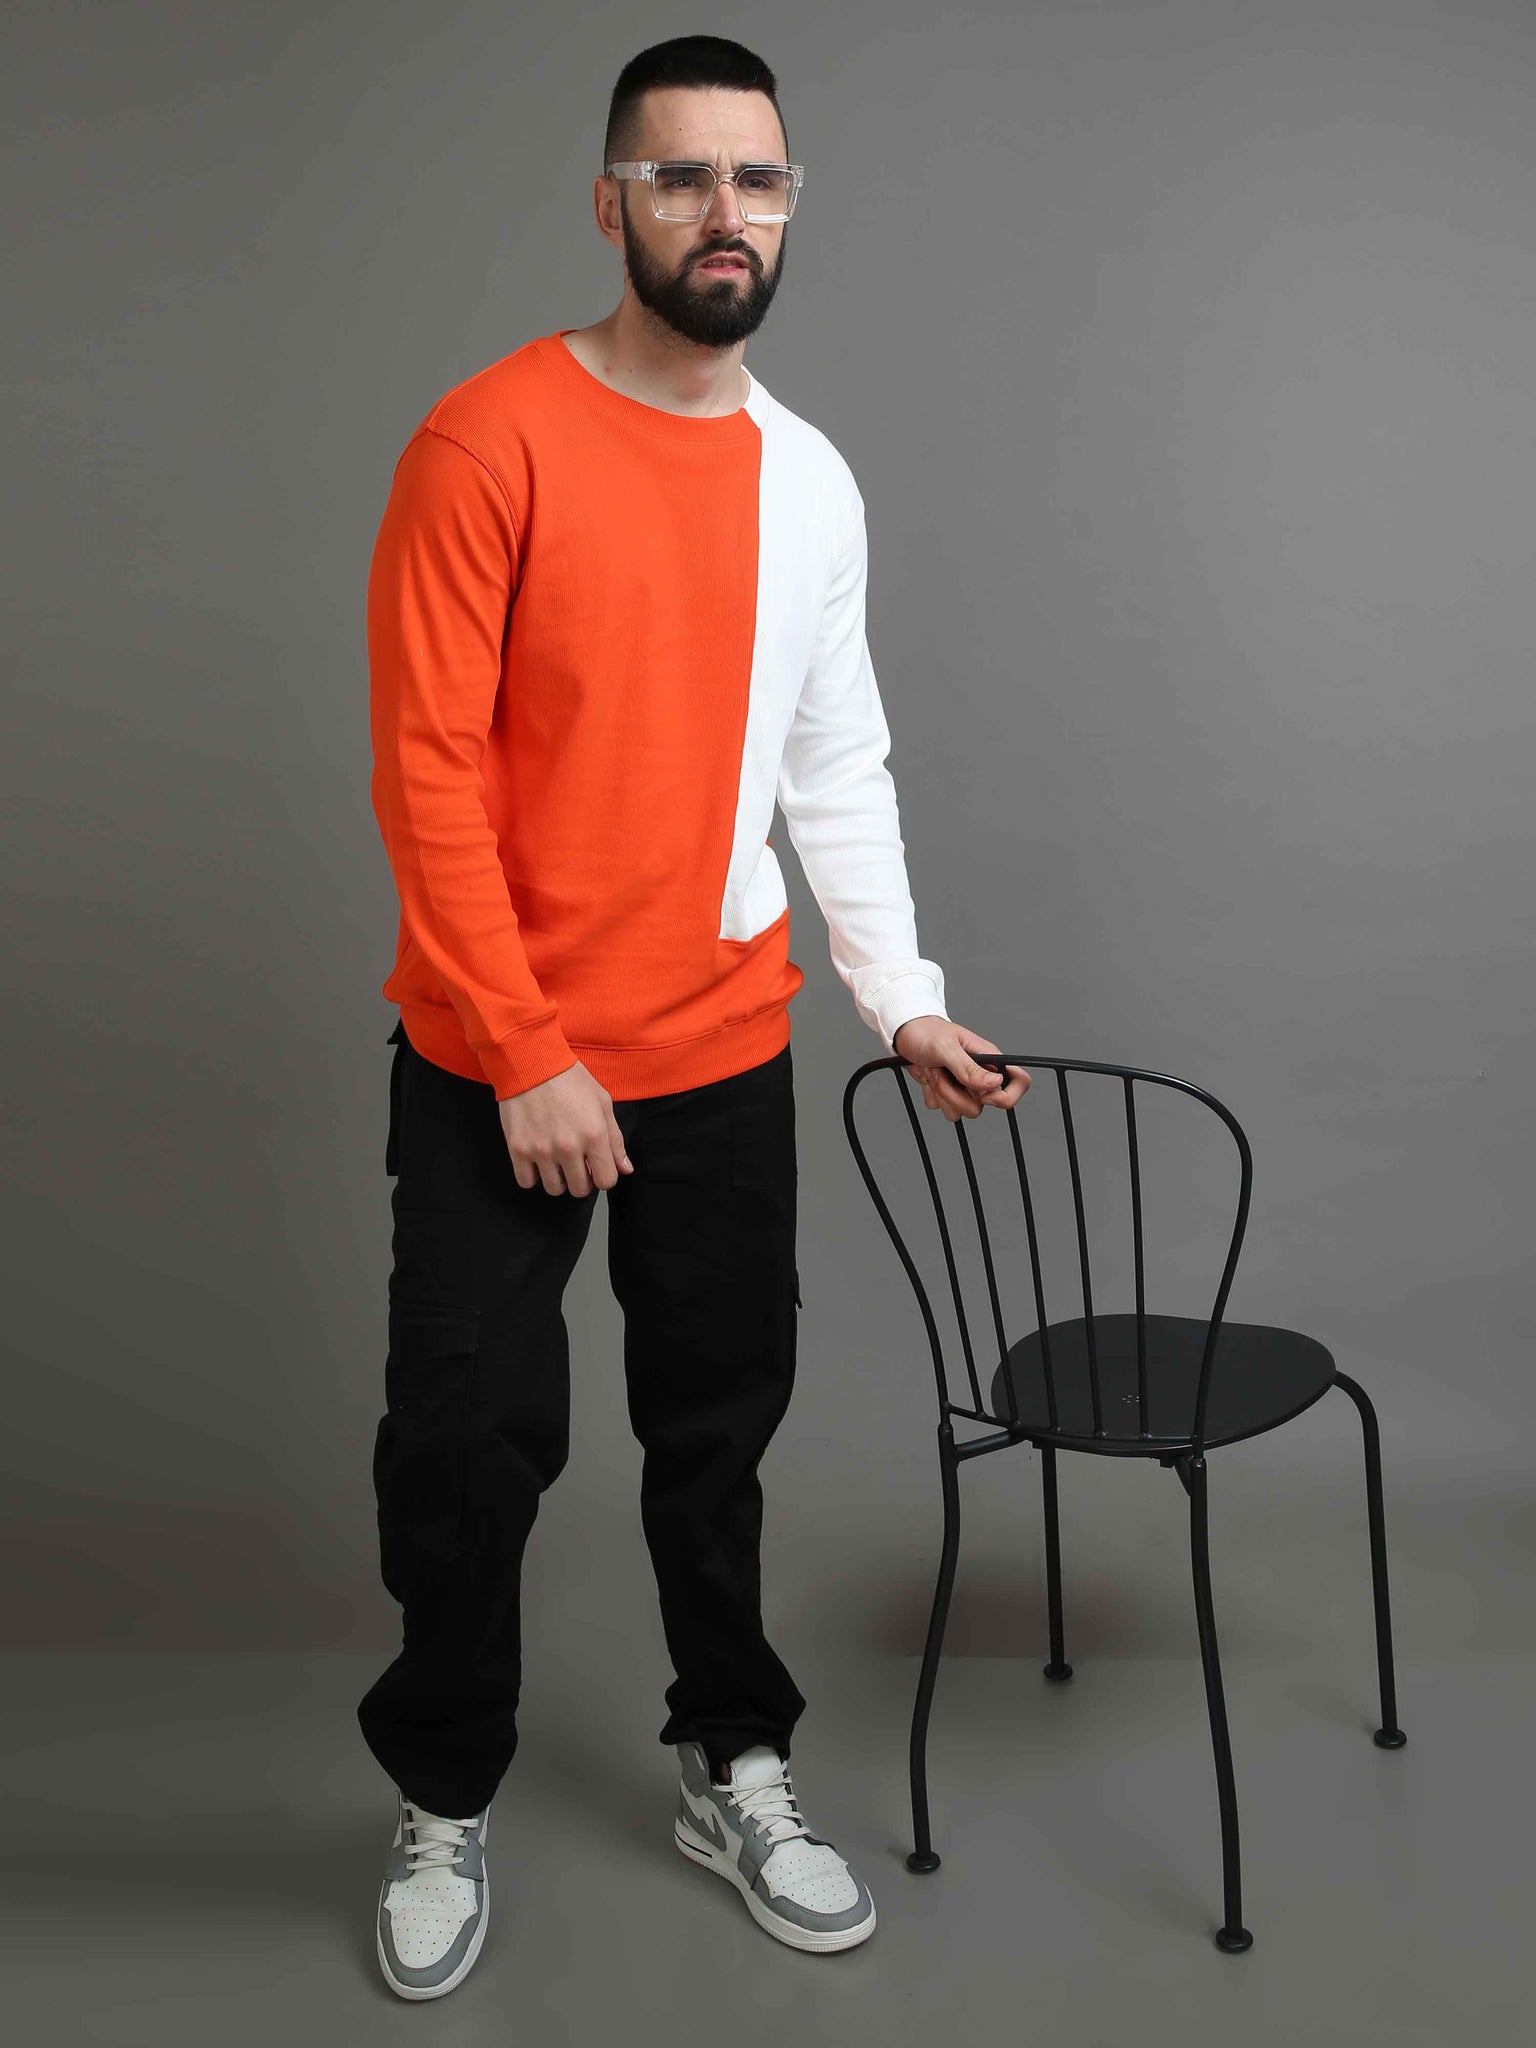 sweatshirts online - Shop trendy Orange and white Sweatshirt